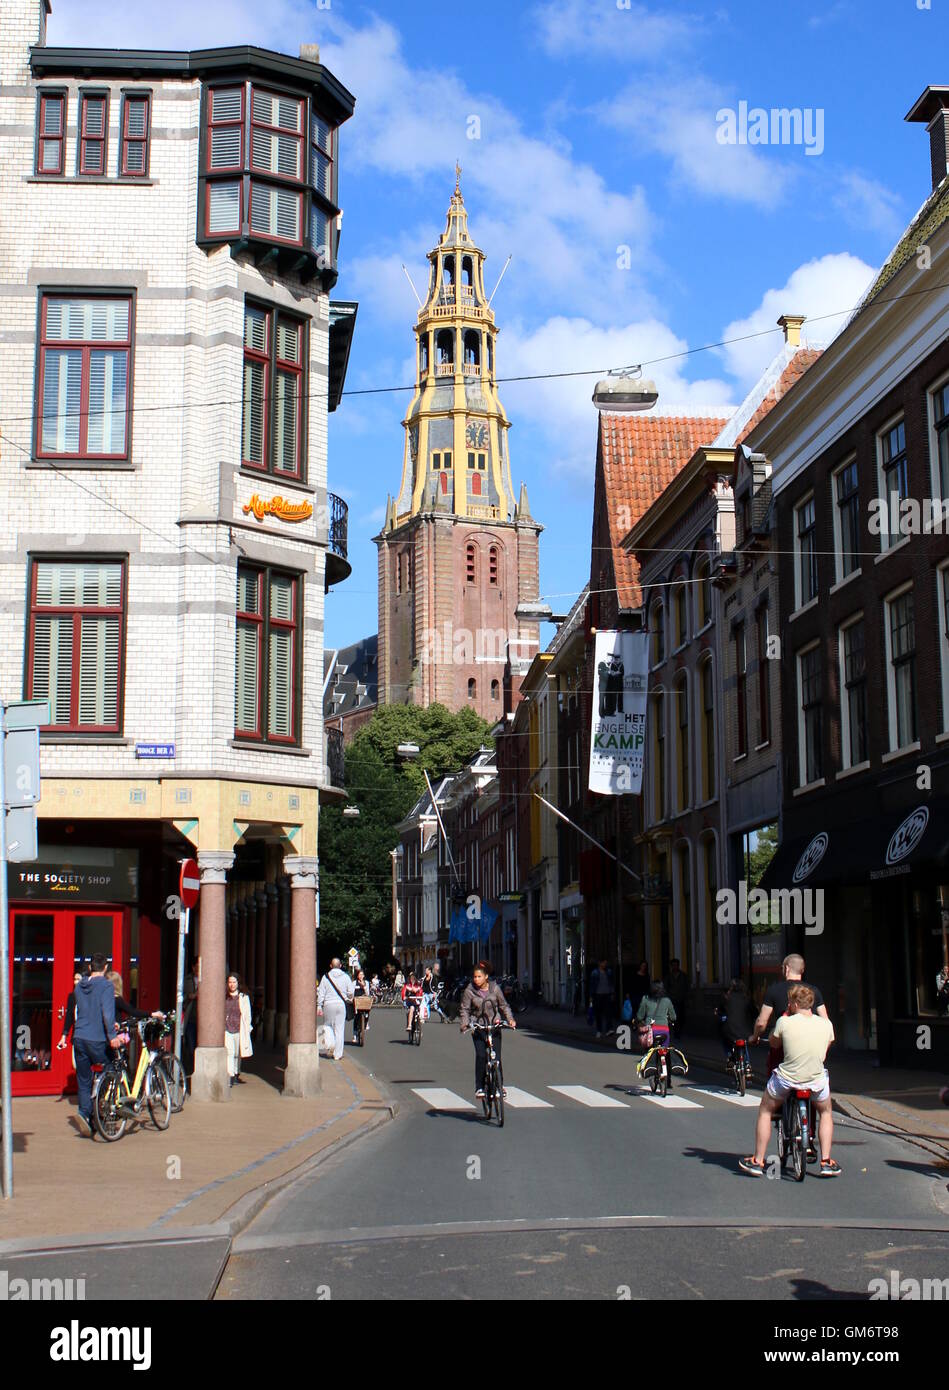 Brugstraat an Ecke Hoge der A-Kanal in Groningen, The Netherlands. Turm von Der Aa-Kerk im Hintergrund die Kirche. Stockfoto